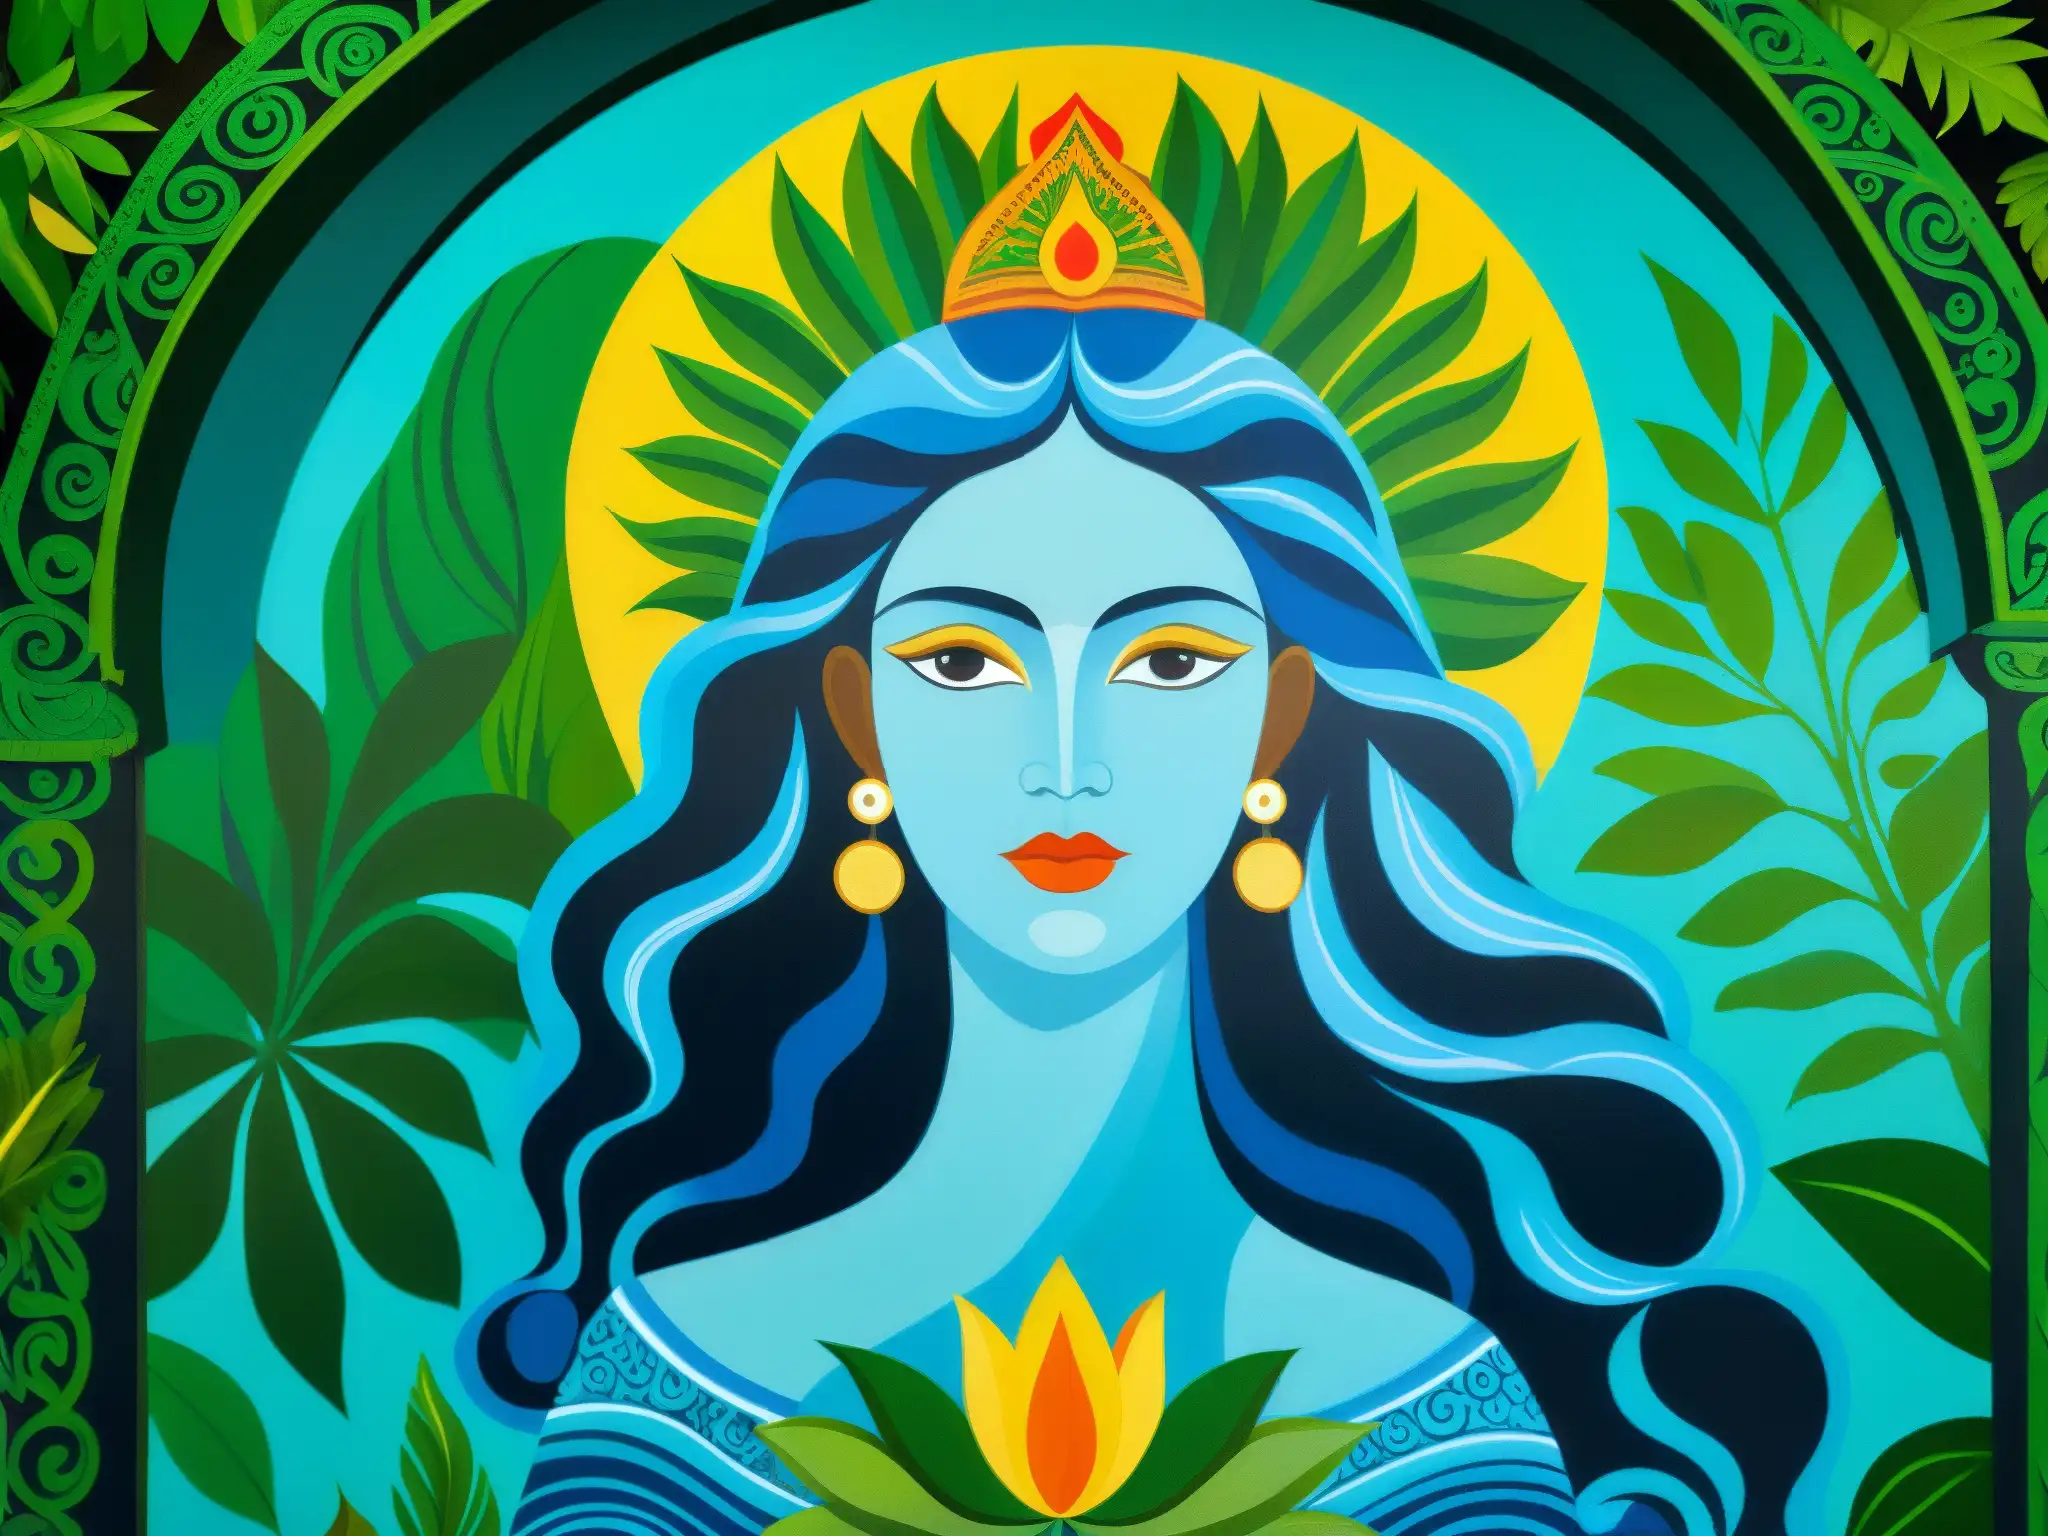 Vibrante mural muestra a la Madre de Agua en la mitología sudamericana, rodeada de naturaleza exuberante y símbolos indígenas